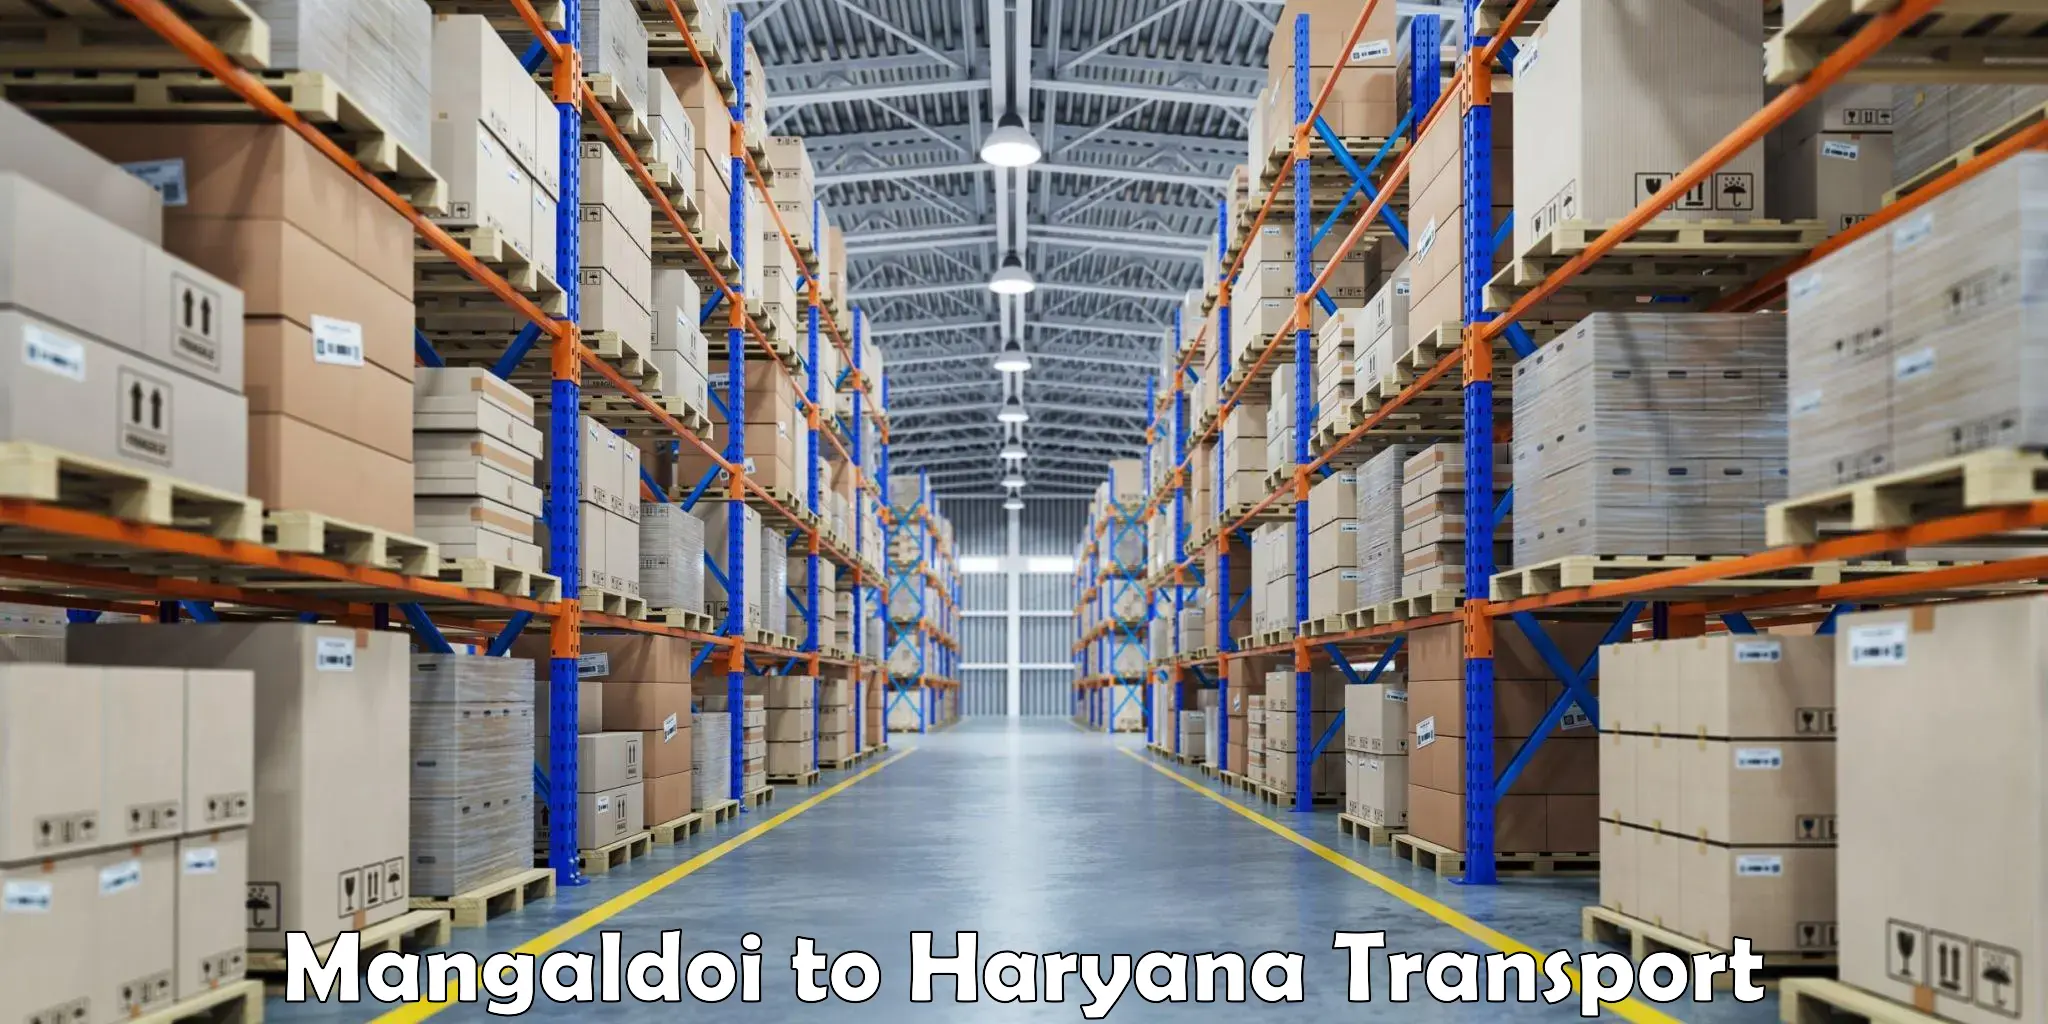 Shipping partner Mangaldoi to Palwal